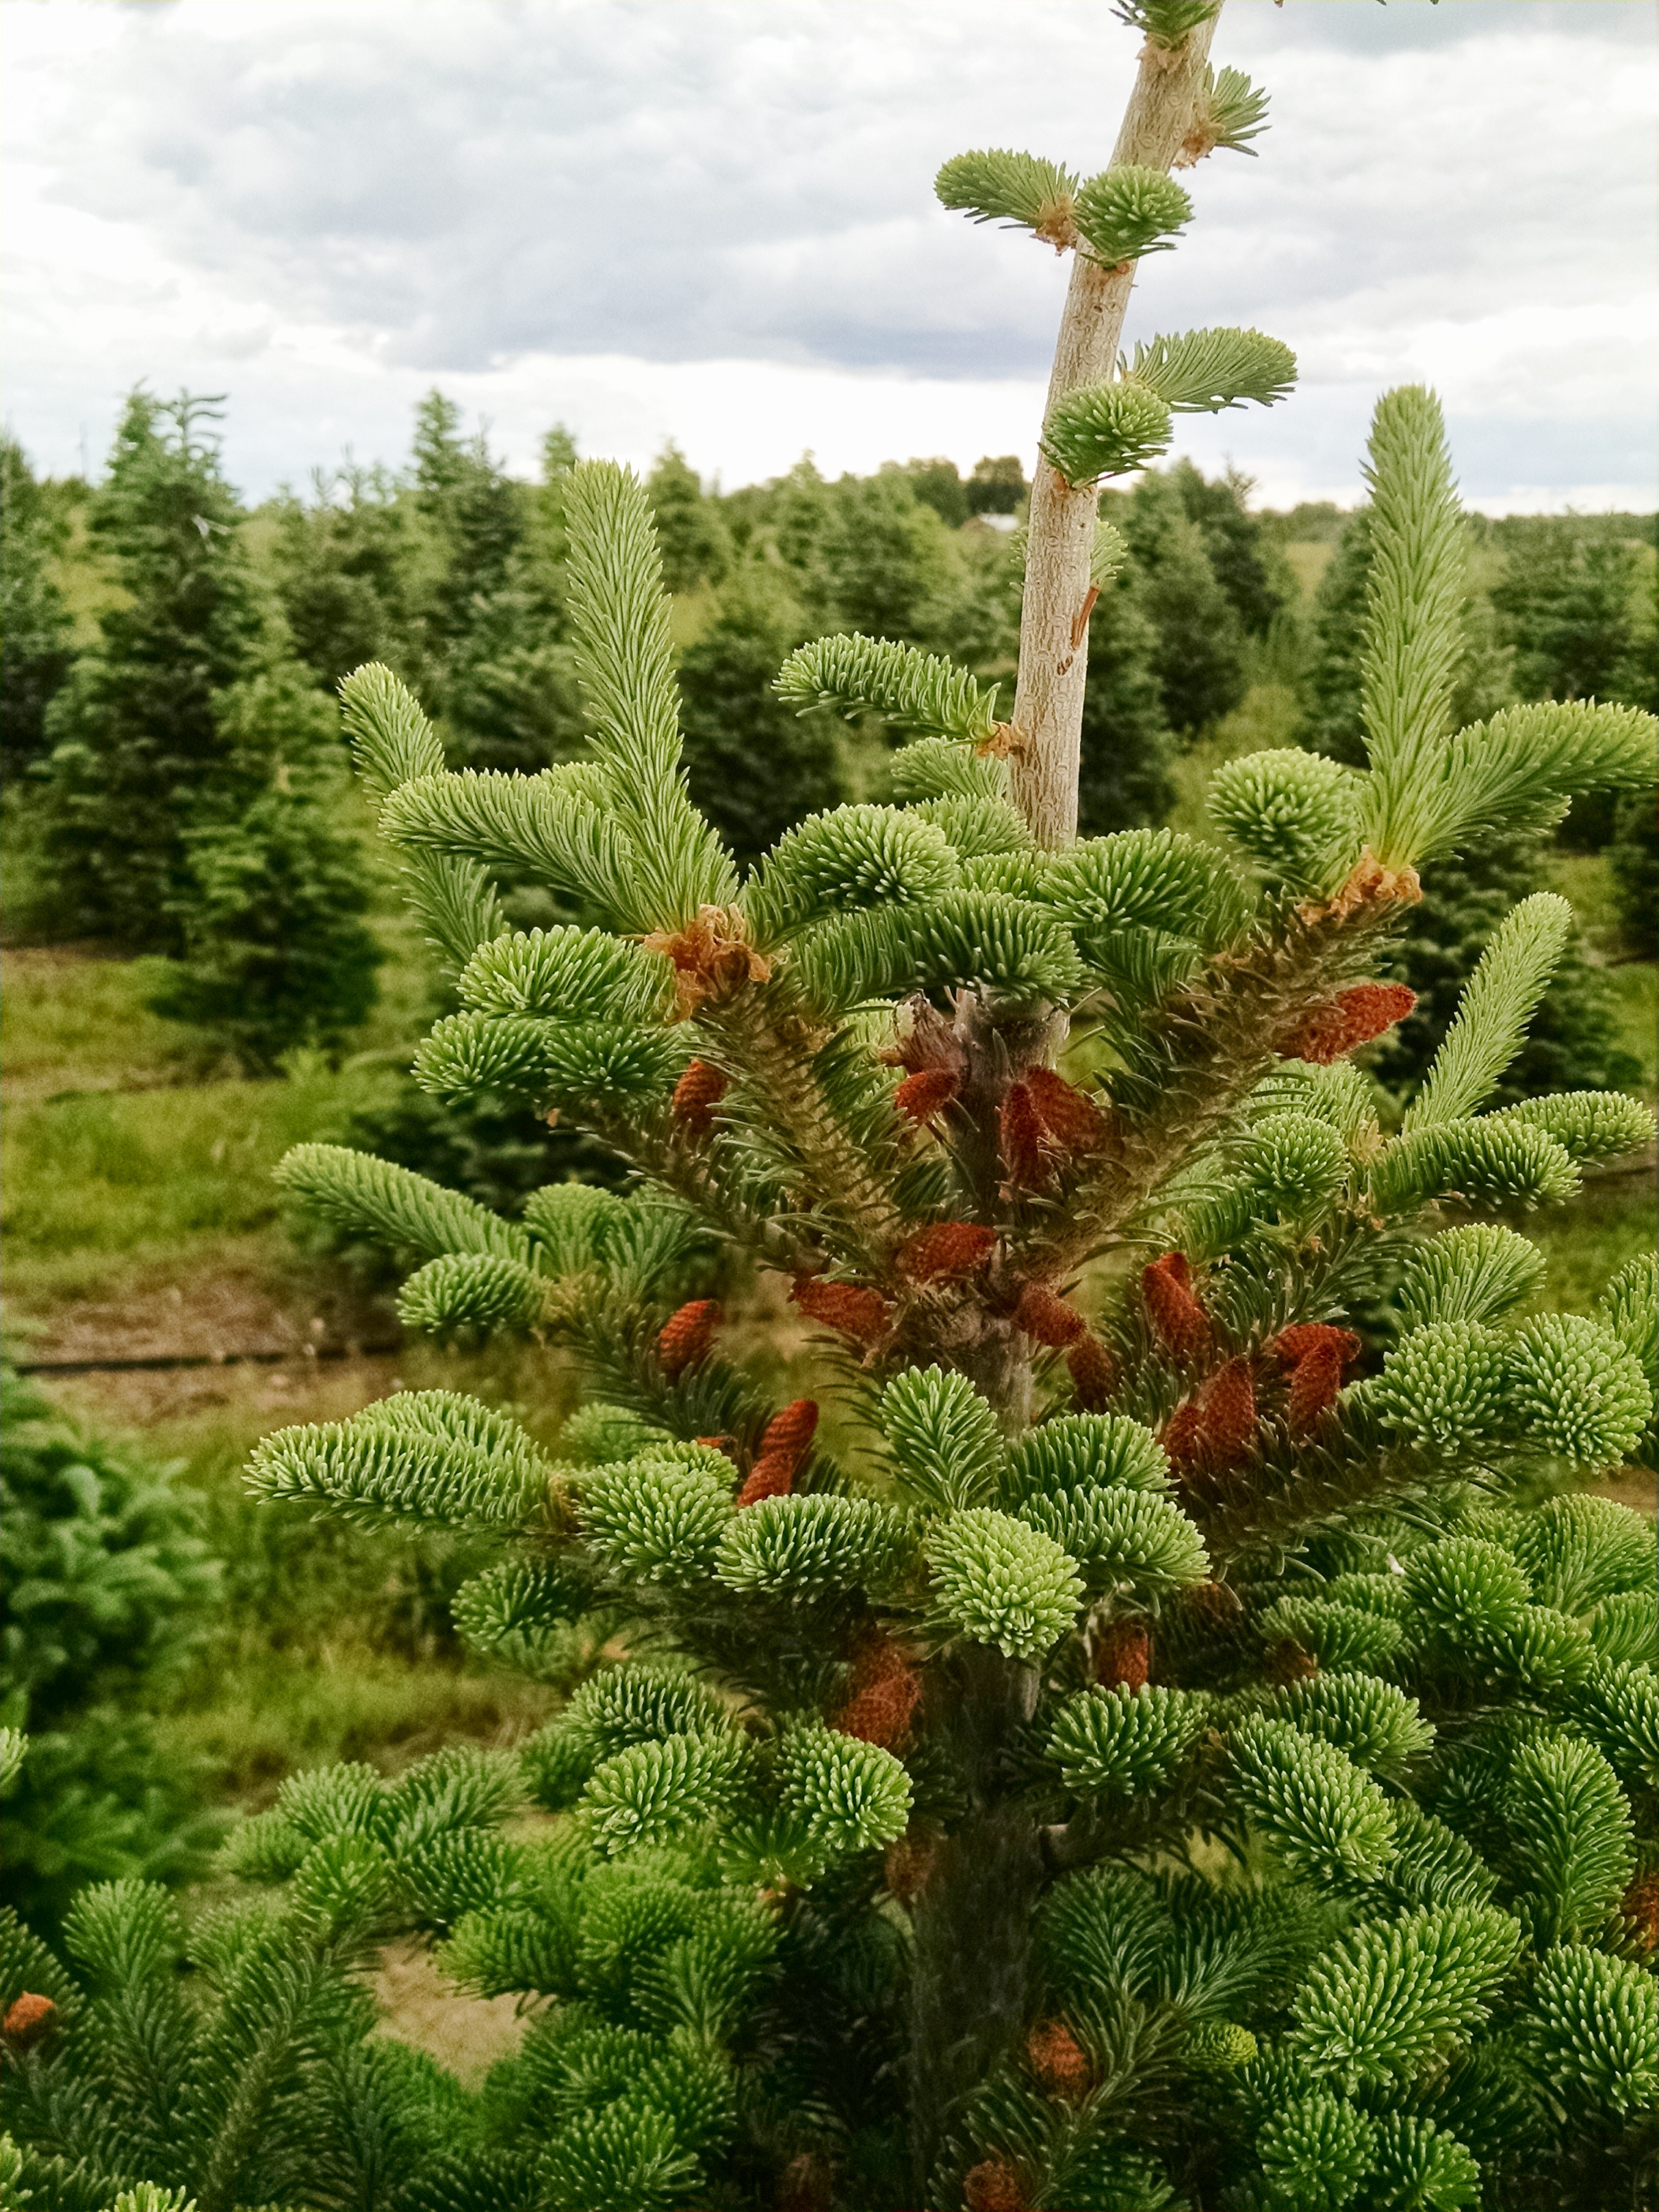 Pine Cones - Goderie's Tree Farm